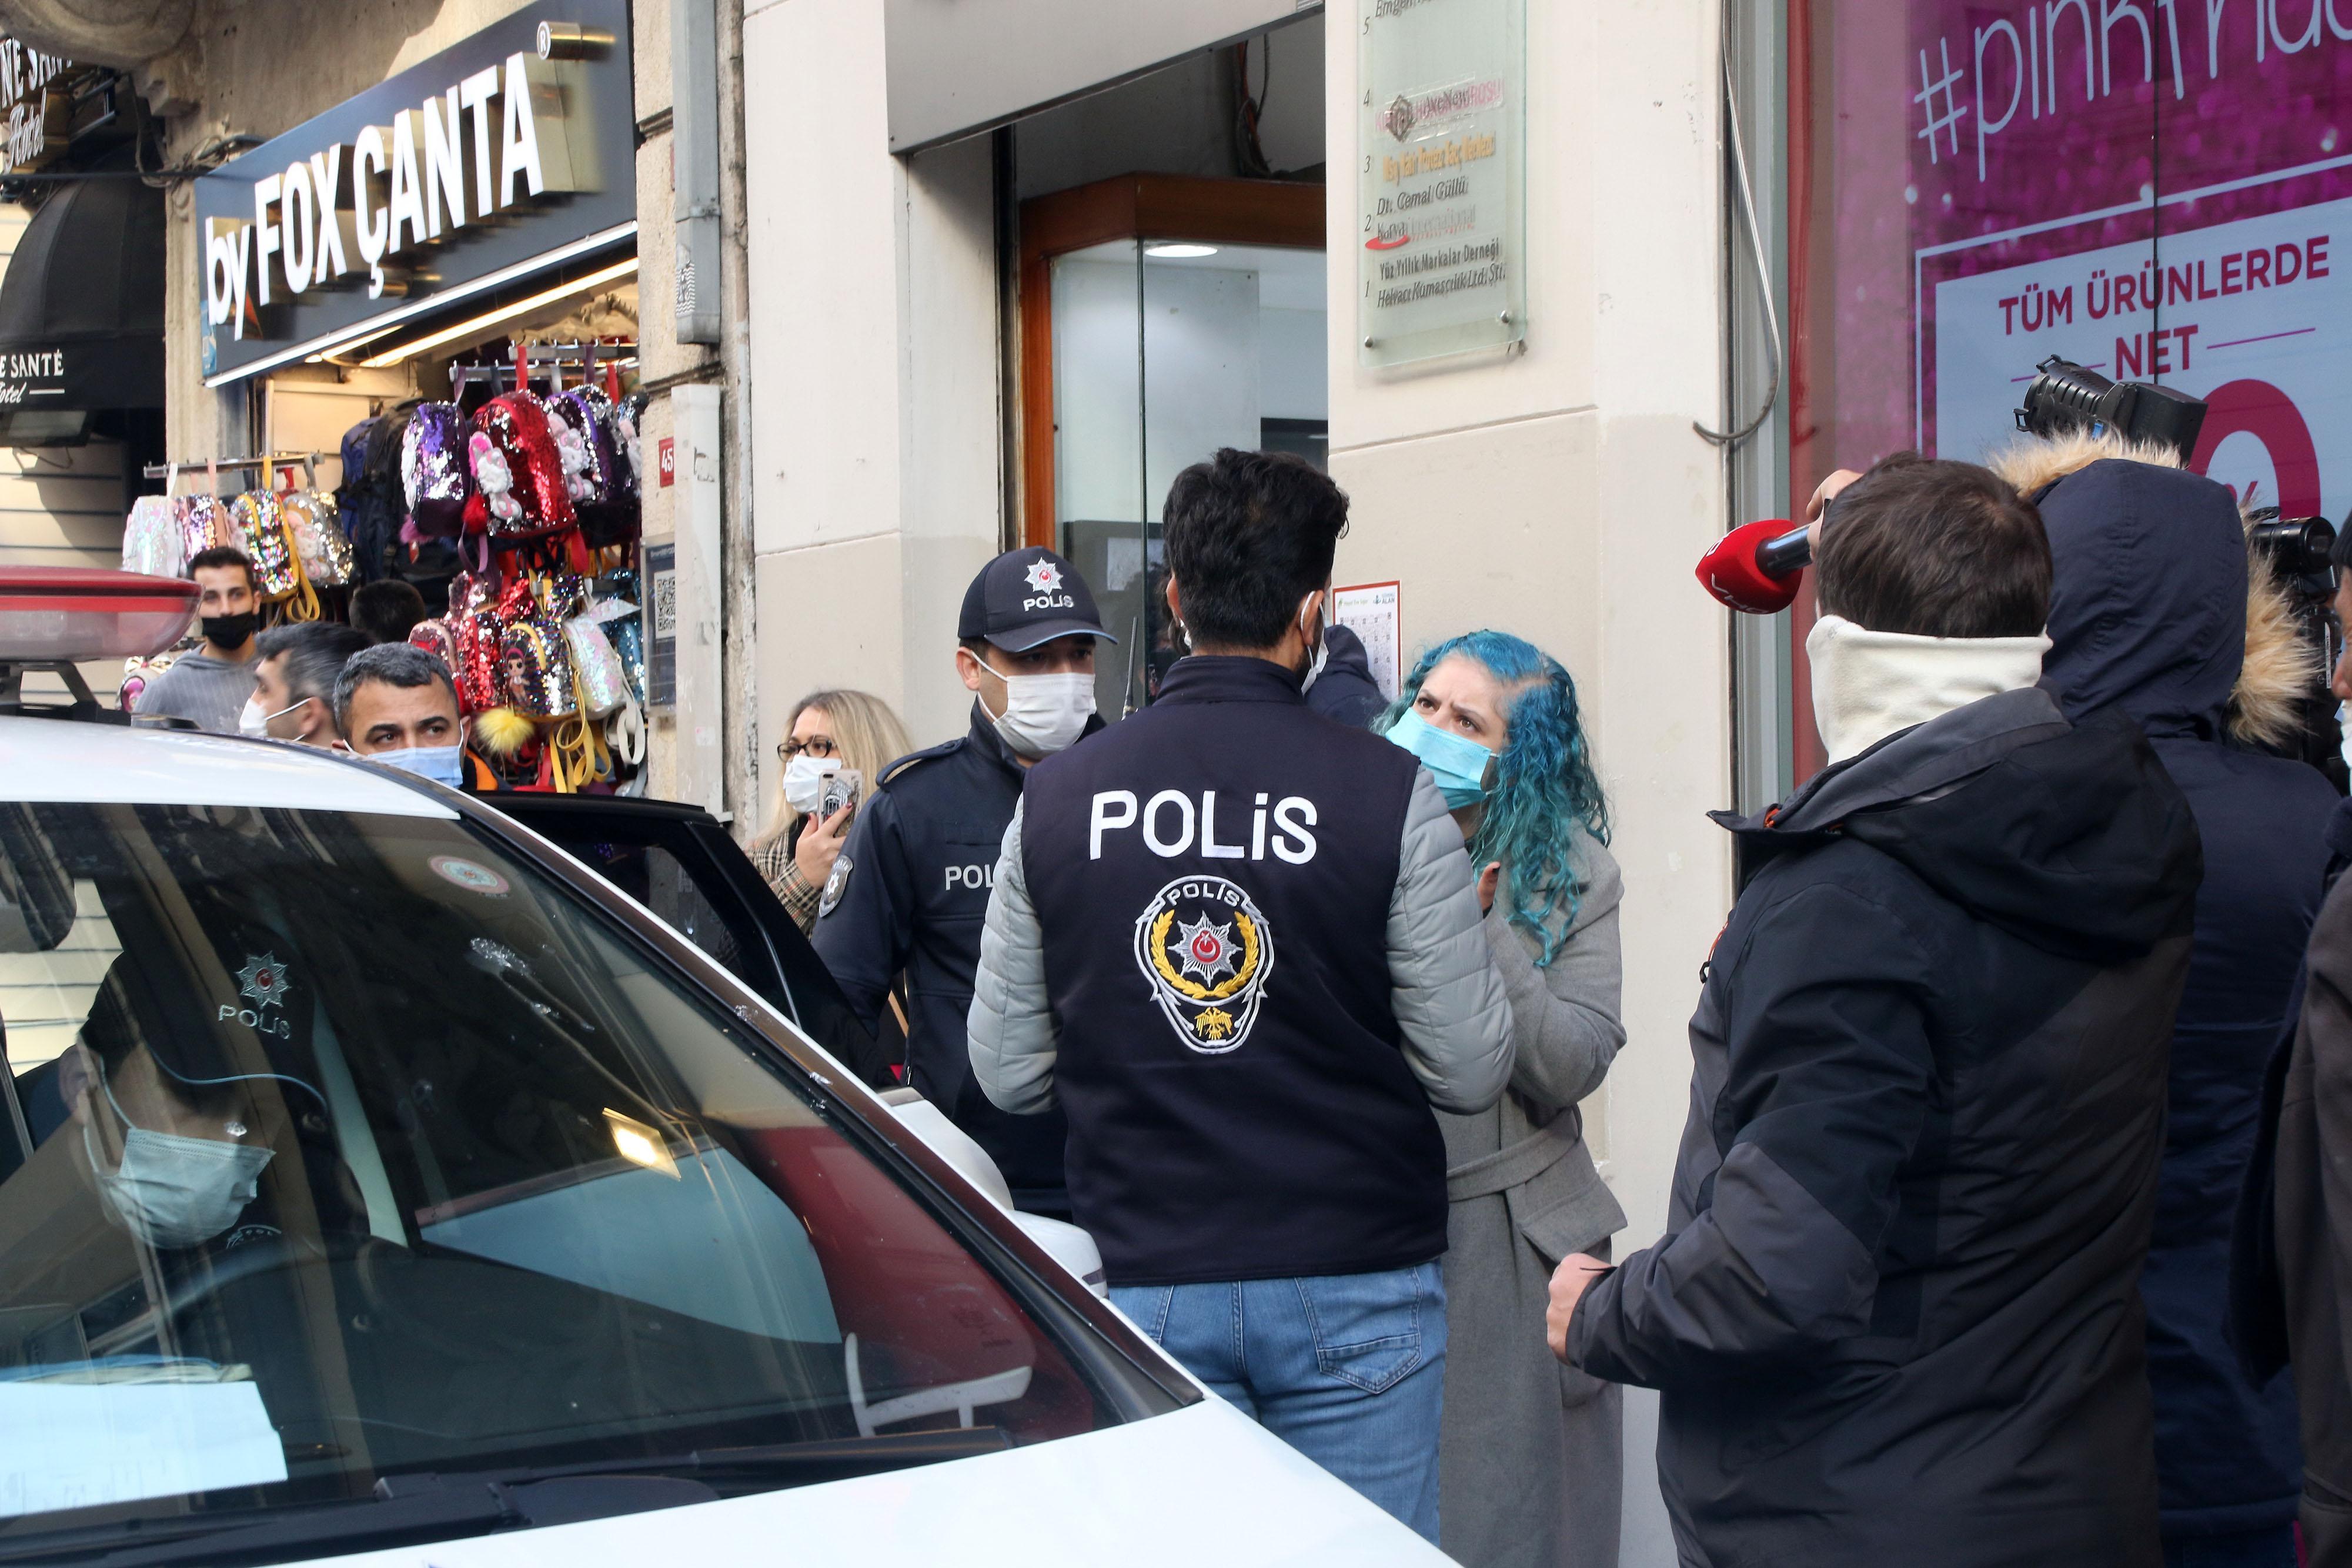 Taksimde maske takmadığı için ceza yazılmak istenen kadın polise zor anlar yaşattı